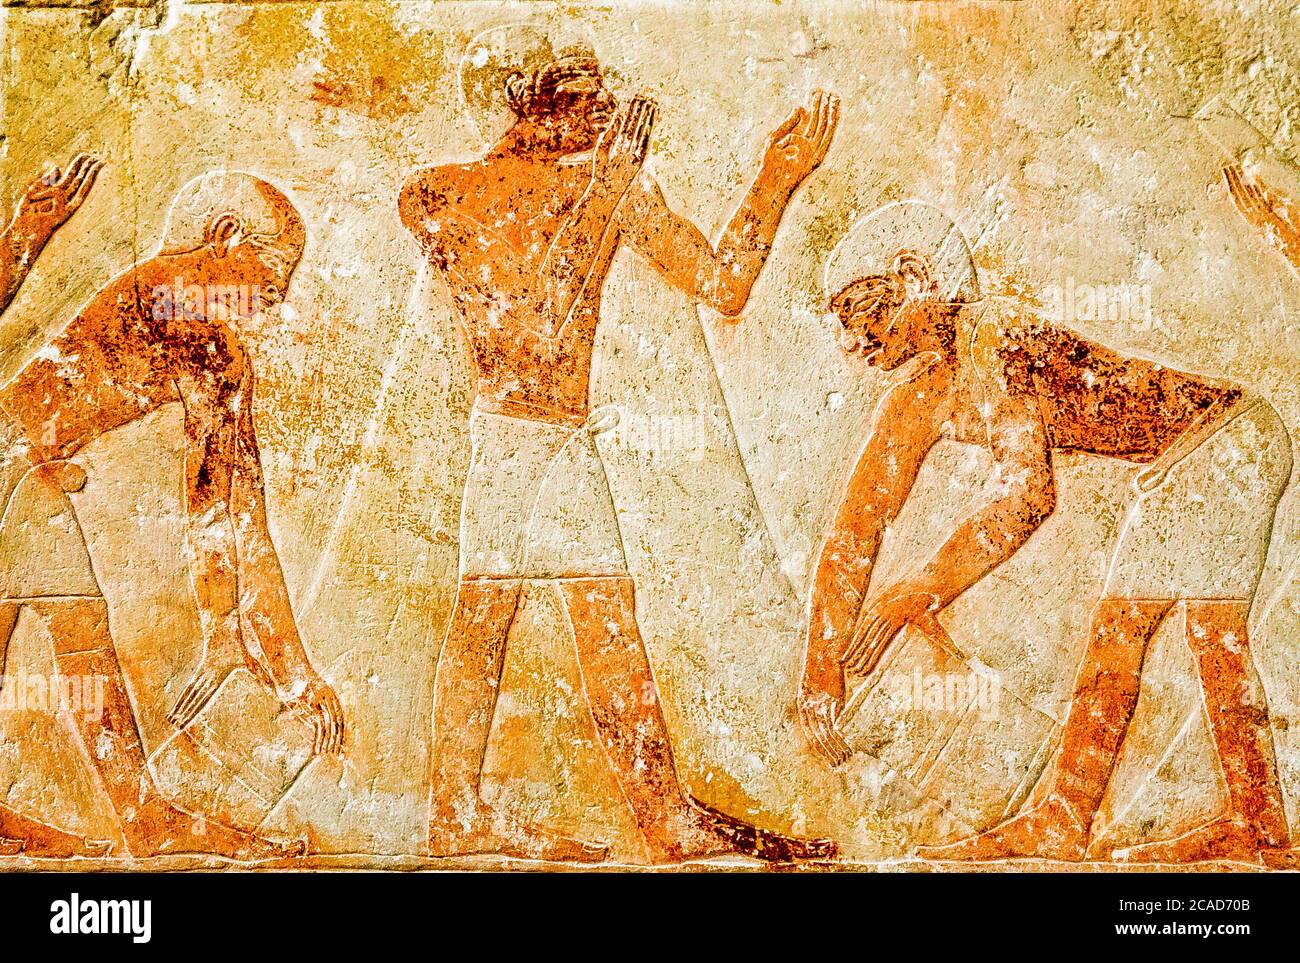 Egipto, el Cairo, Museo Egipcio, de la tumba de Kaemrehu, Saqqara, detalle de un gran relieve que representa la escena agrícola: Medición de la cosecha. Foto de stock